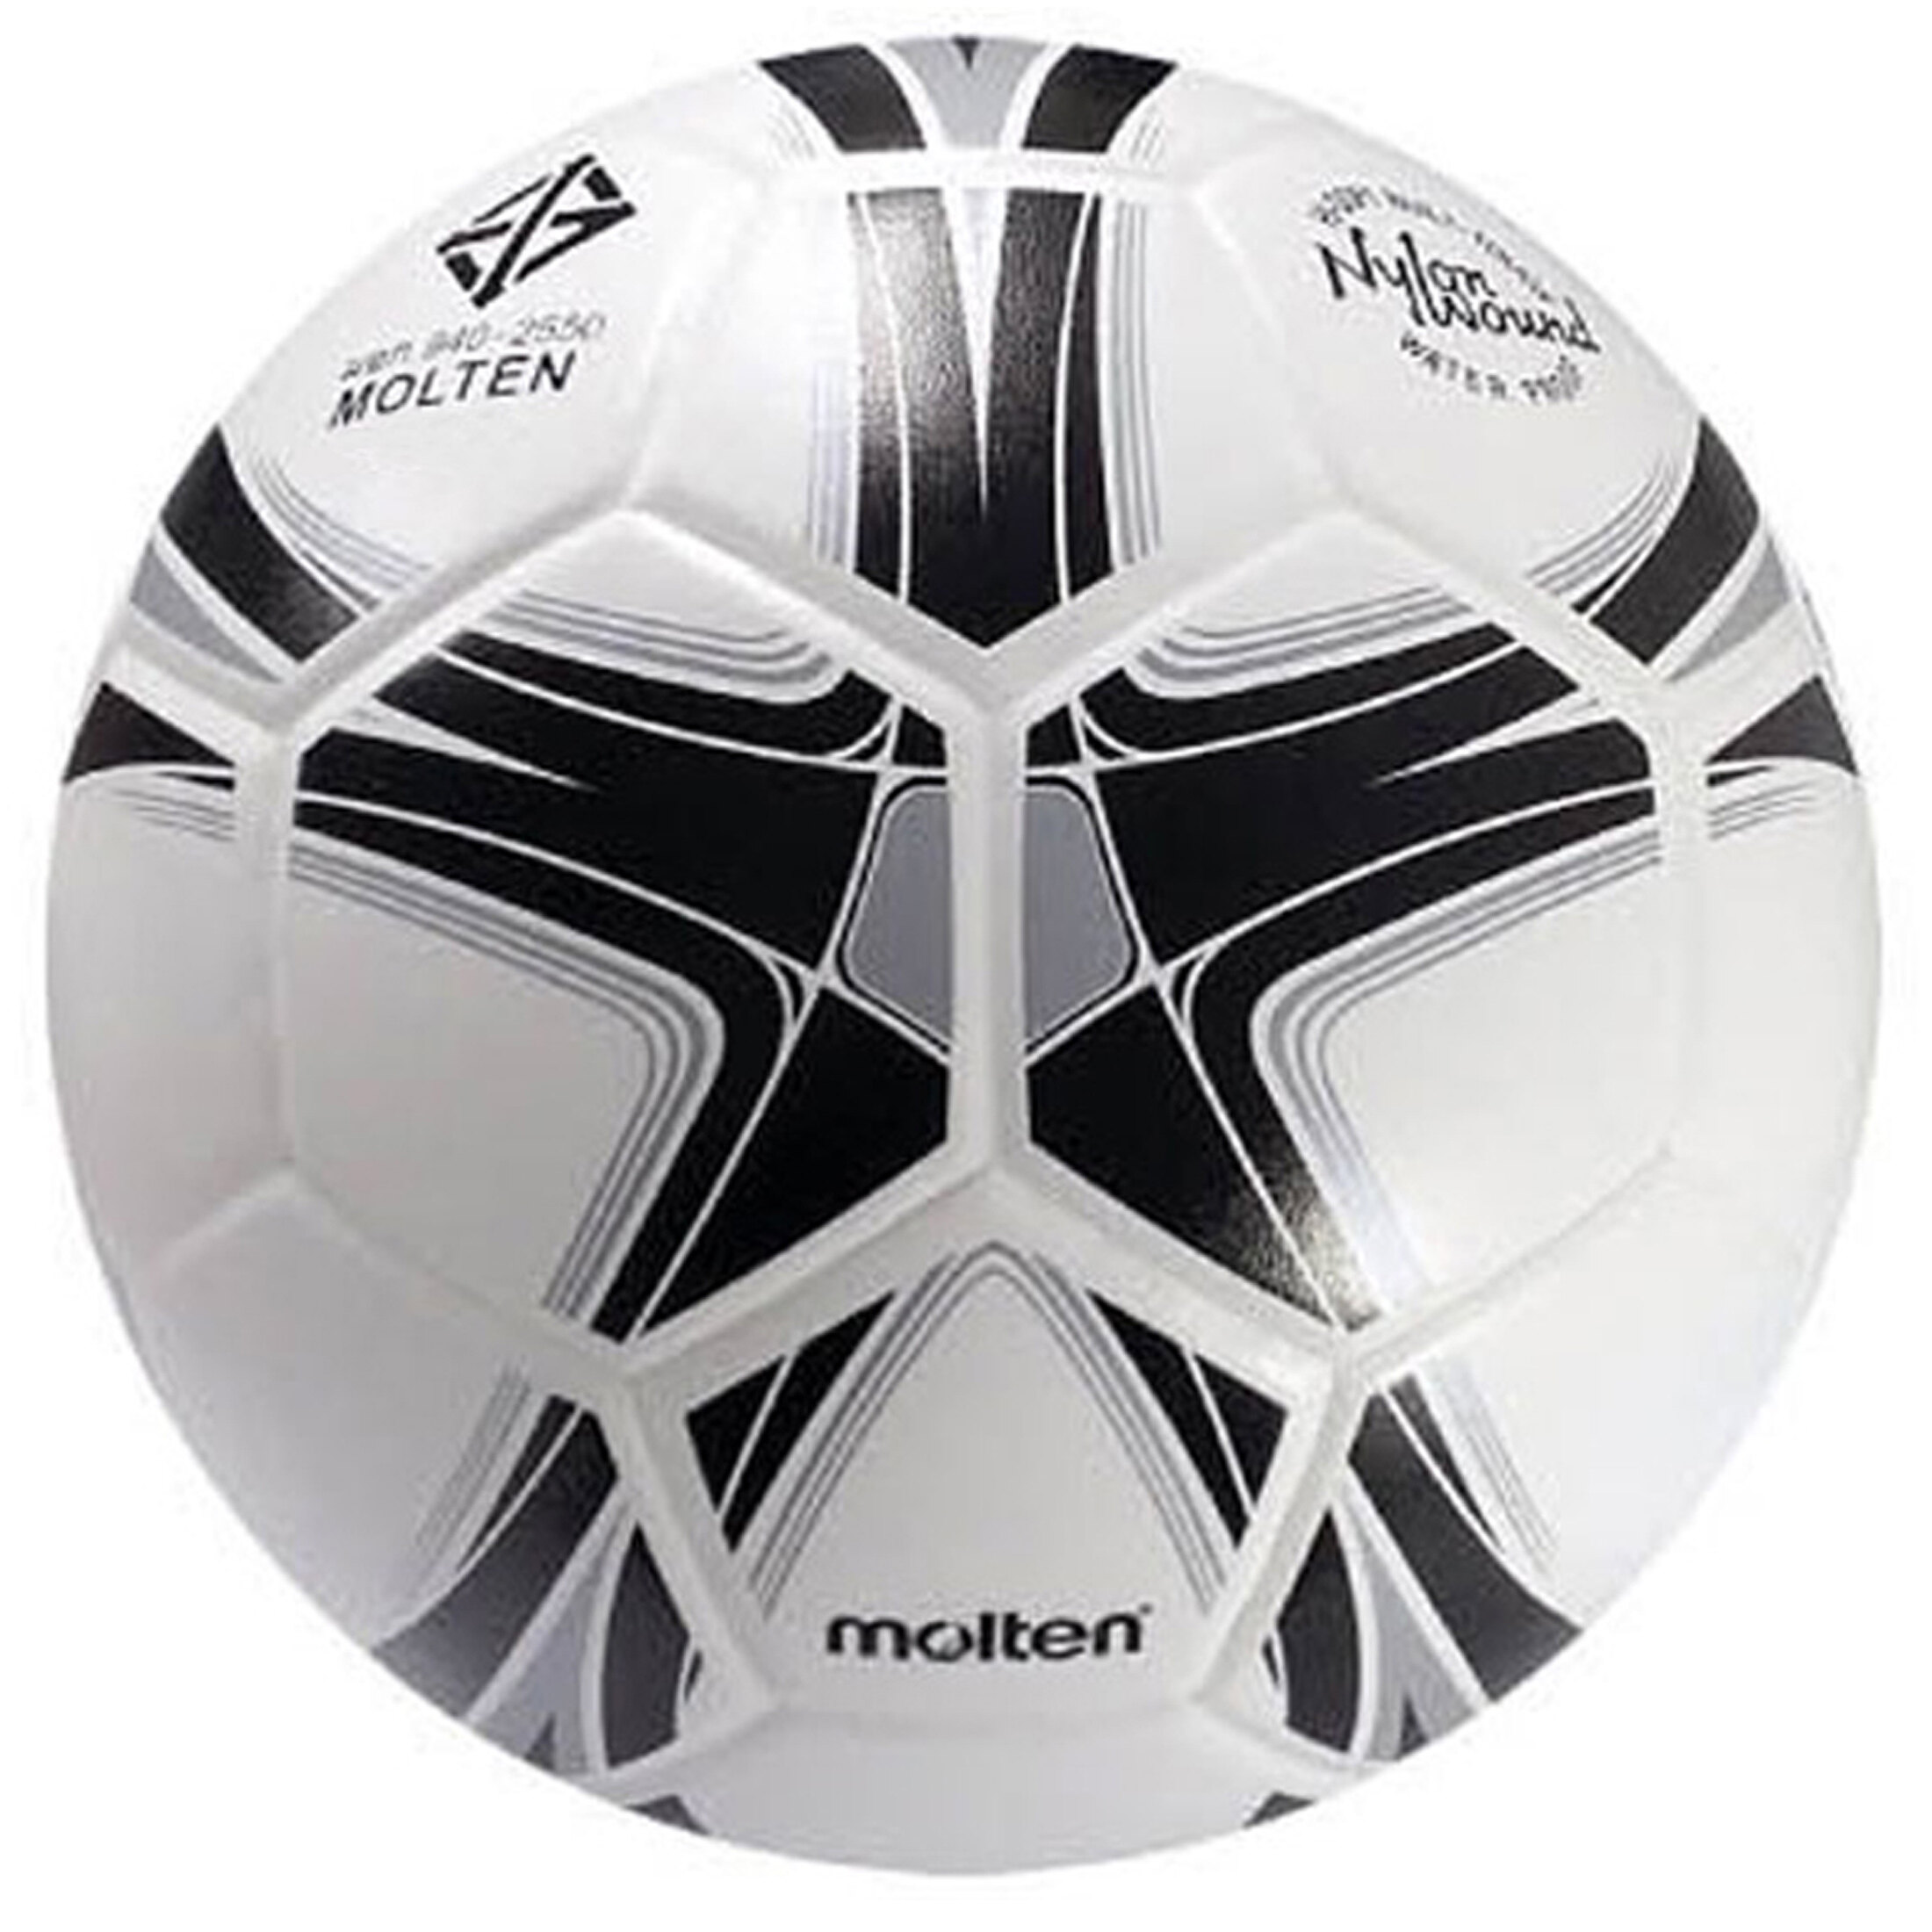 ลูกฟุตบอล เบอร์ 3 ลูกบอลสำหรับเด็ก หนังอัด PVC Molten F3Y1505 สินค้าของแท้ มี มอก.